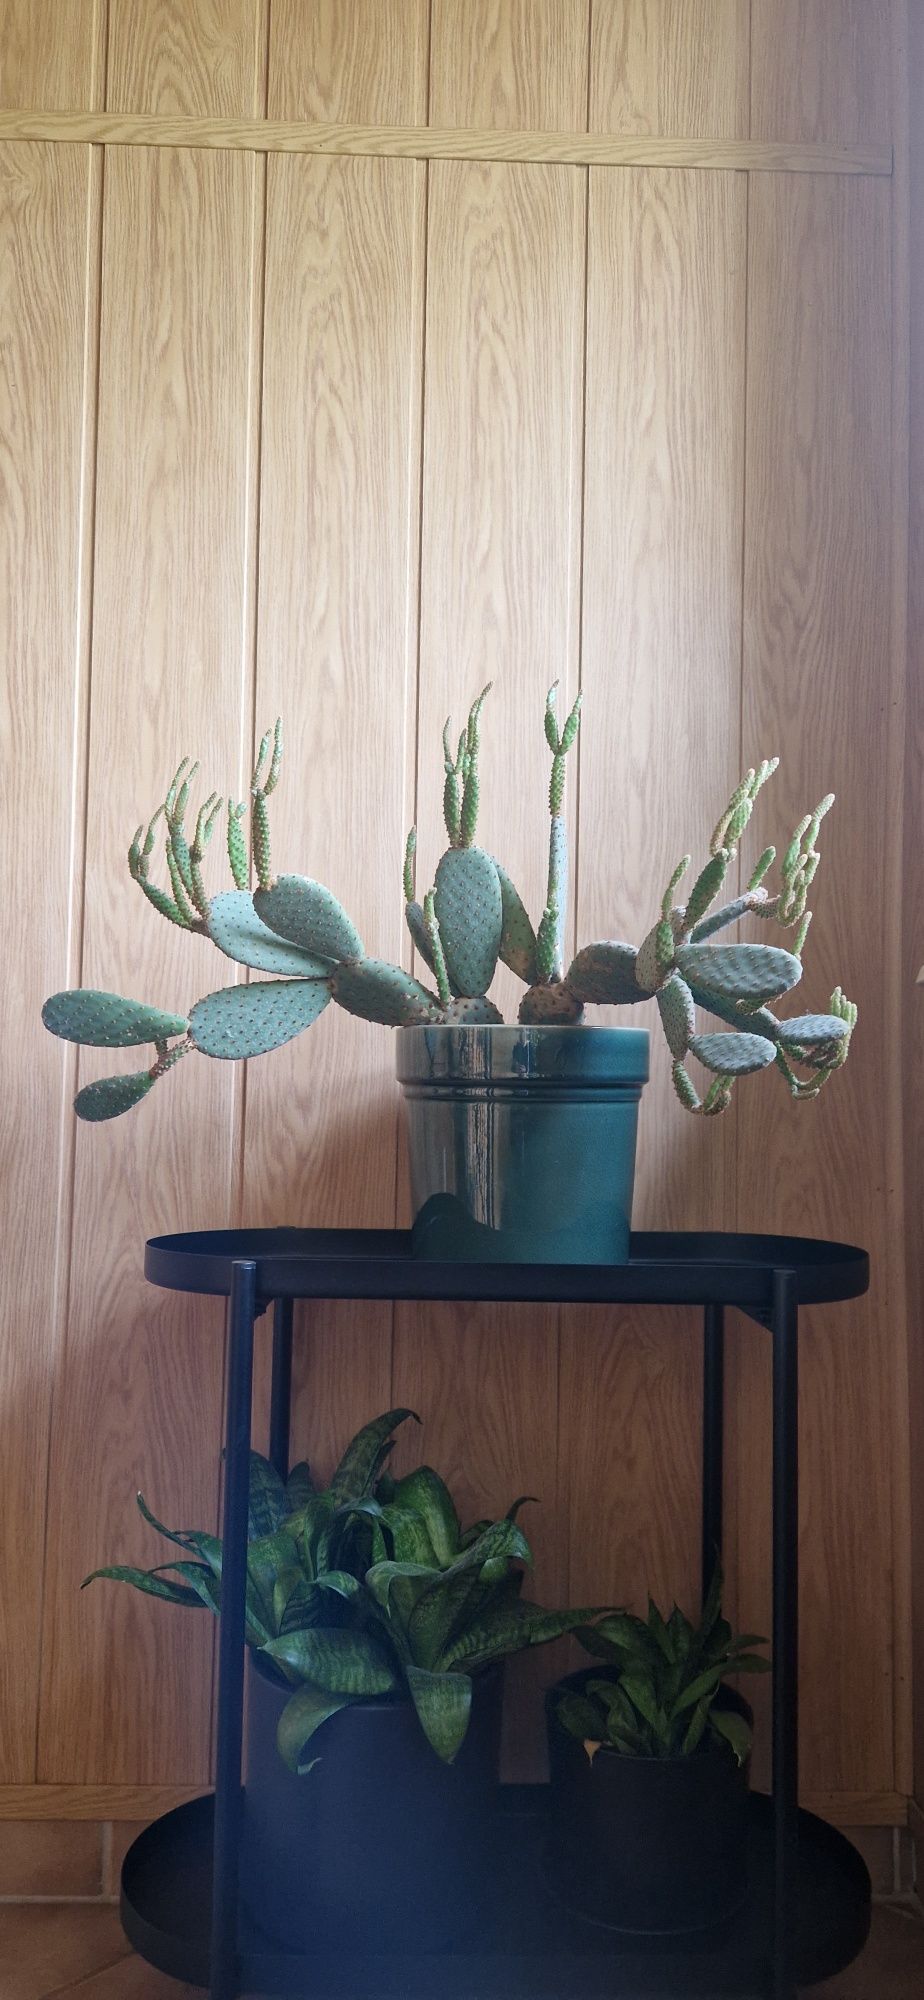 Kaktus Kwiat opuncji opuncja